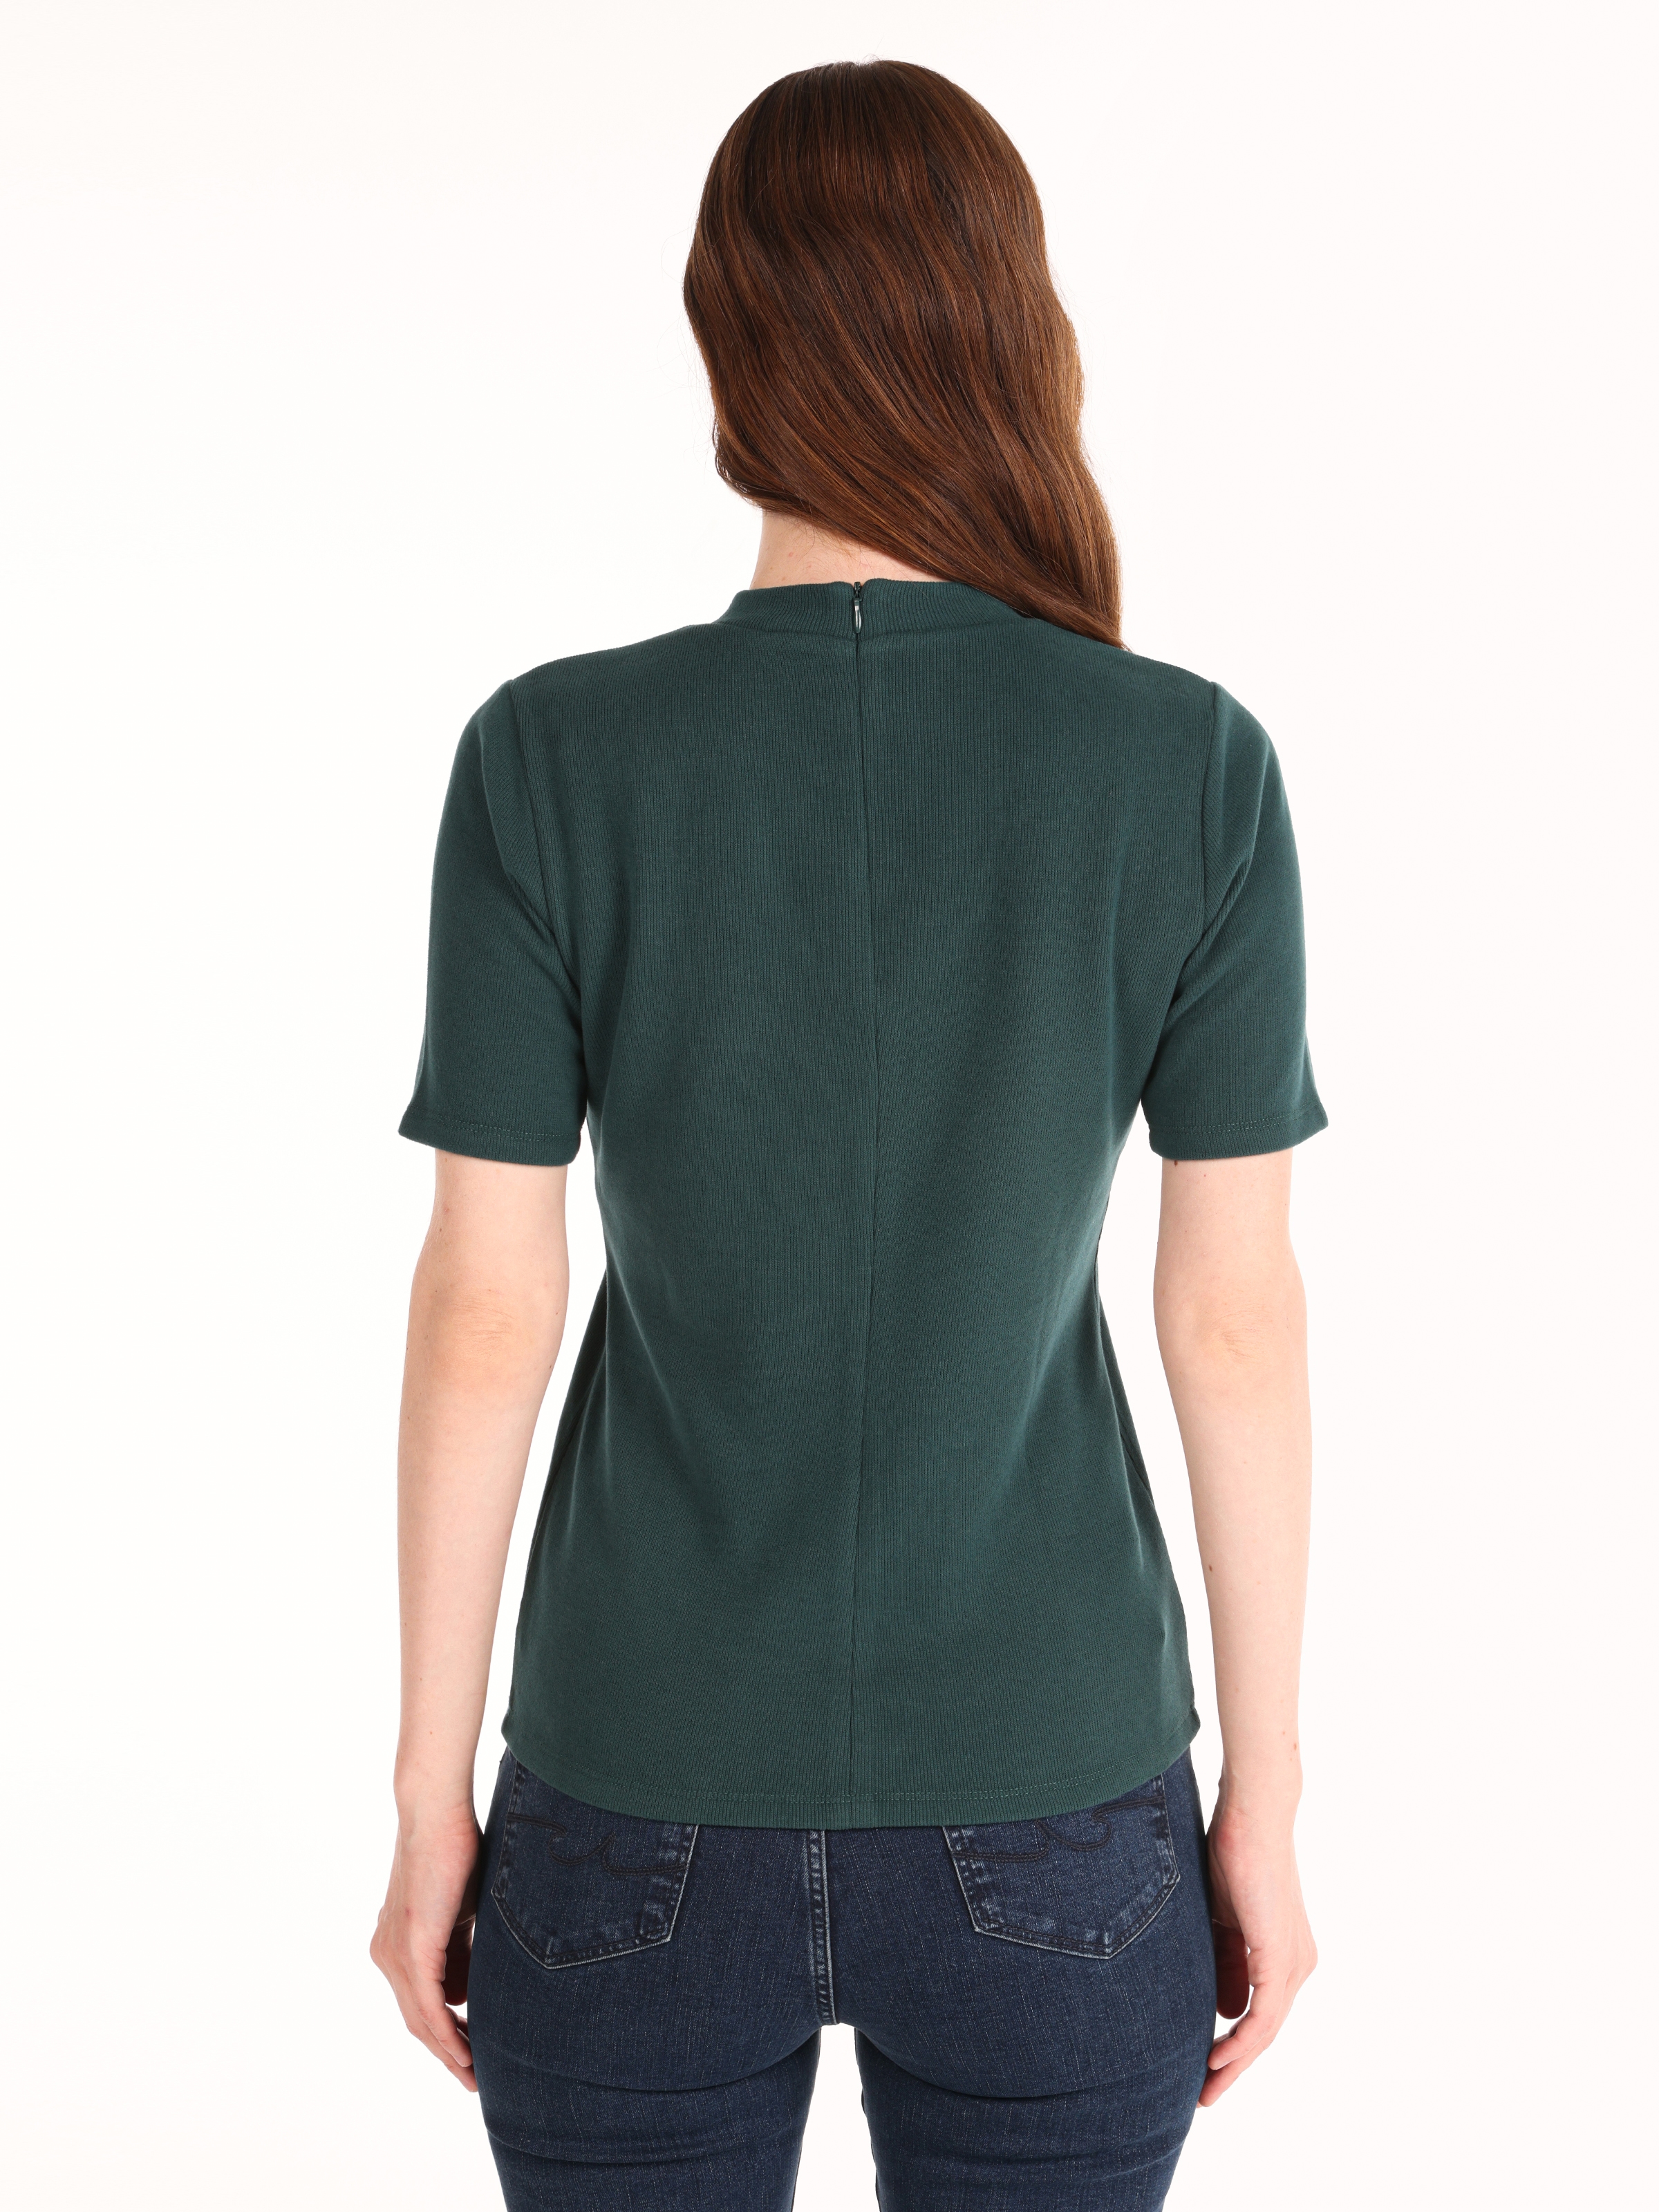 Afișați detalii pentru Tricou Cu Maneca Scurta De Dama Verde Slim Fit  